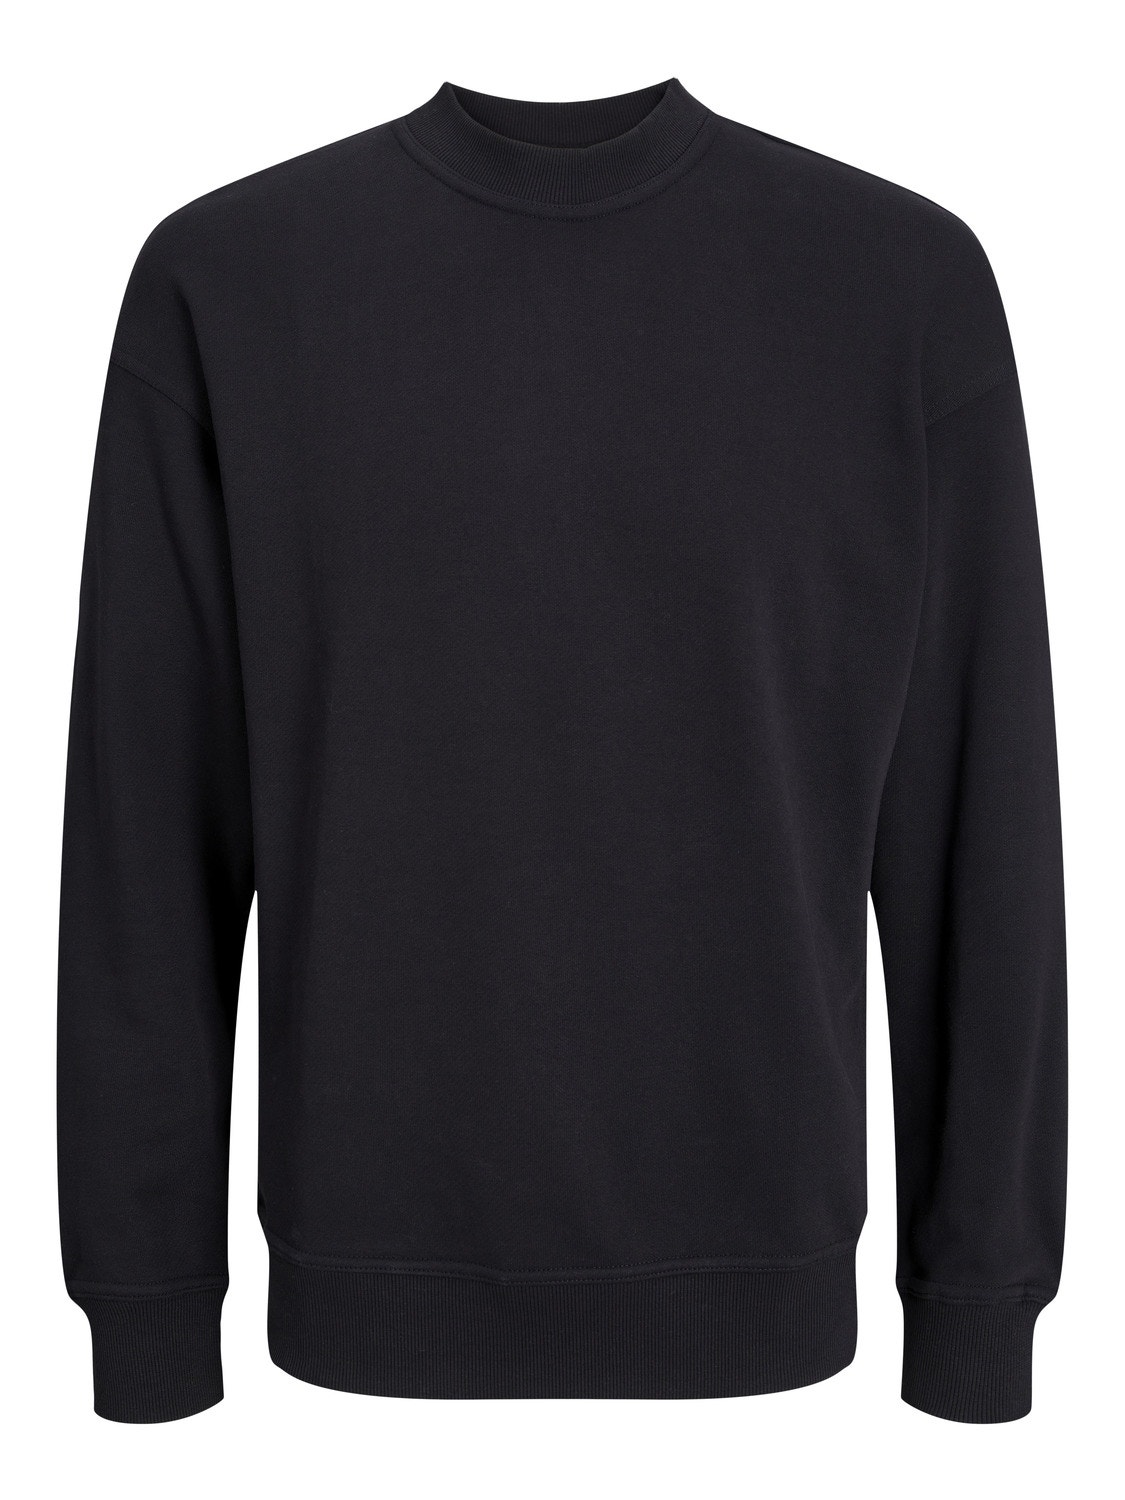 Jack & Jones Plain Crew neck Sweatshirt -Black - 12251330